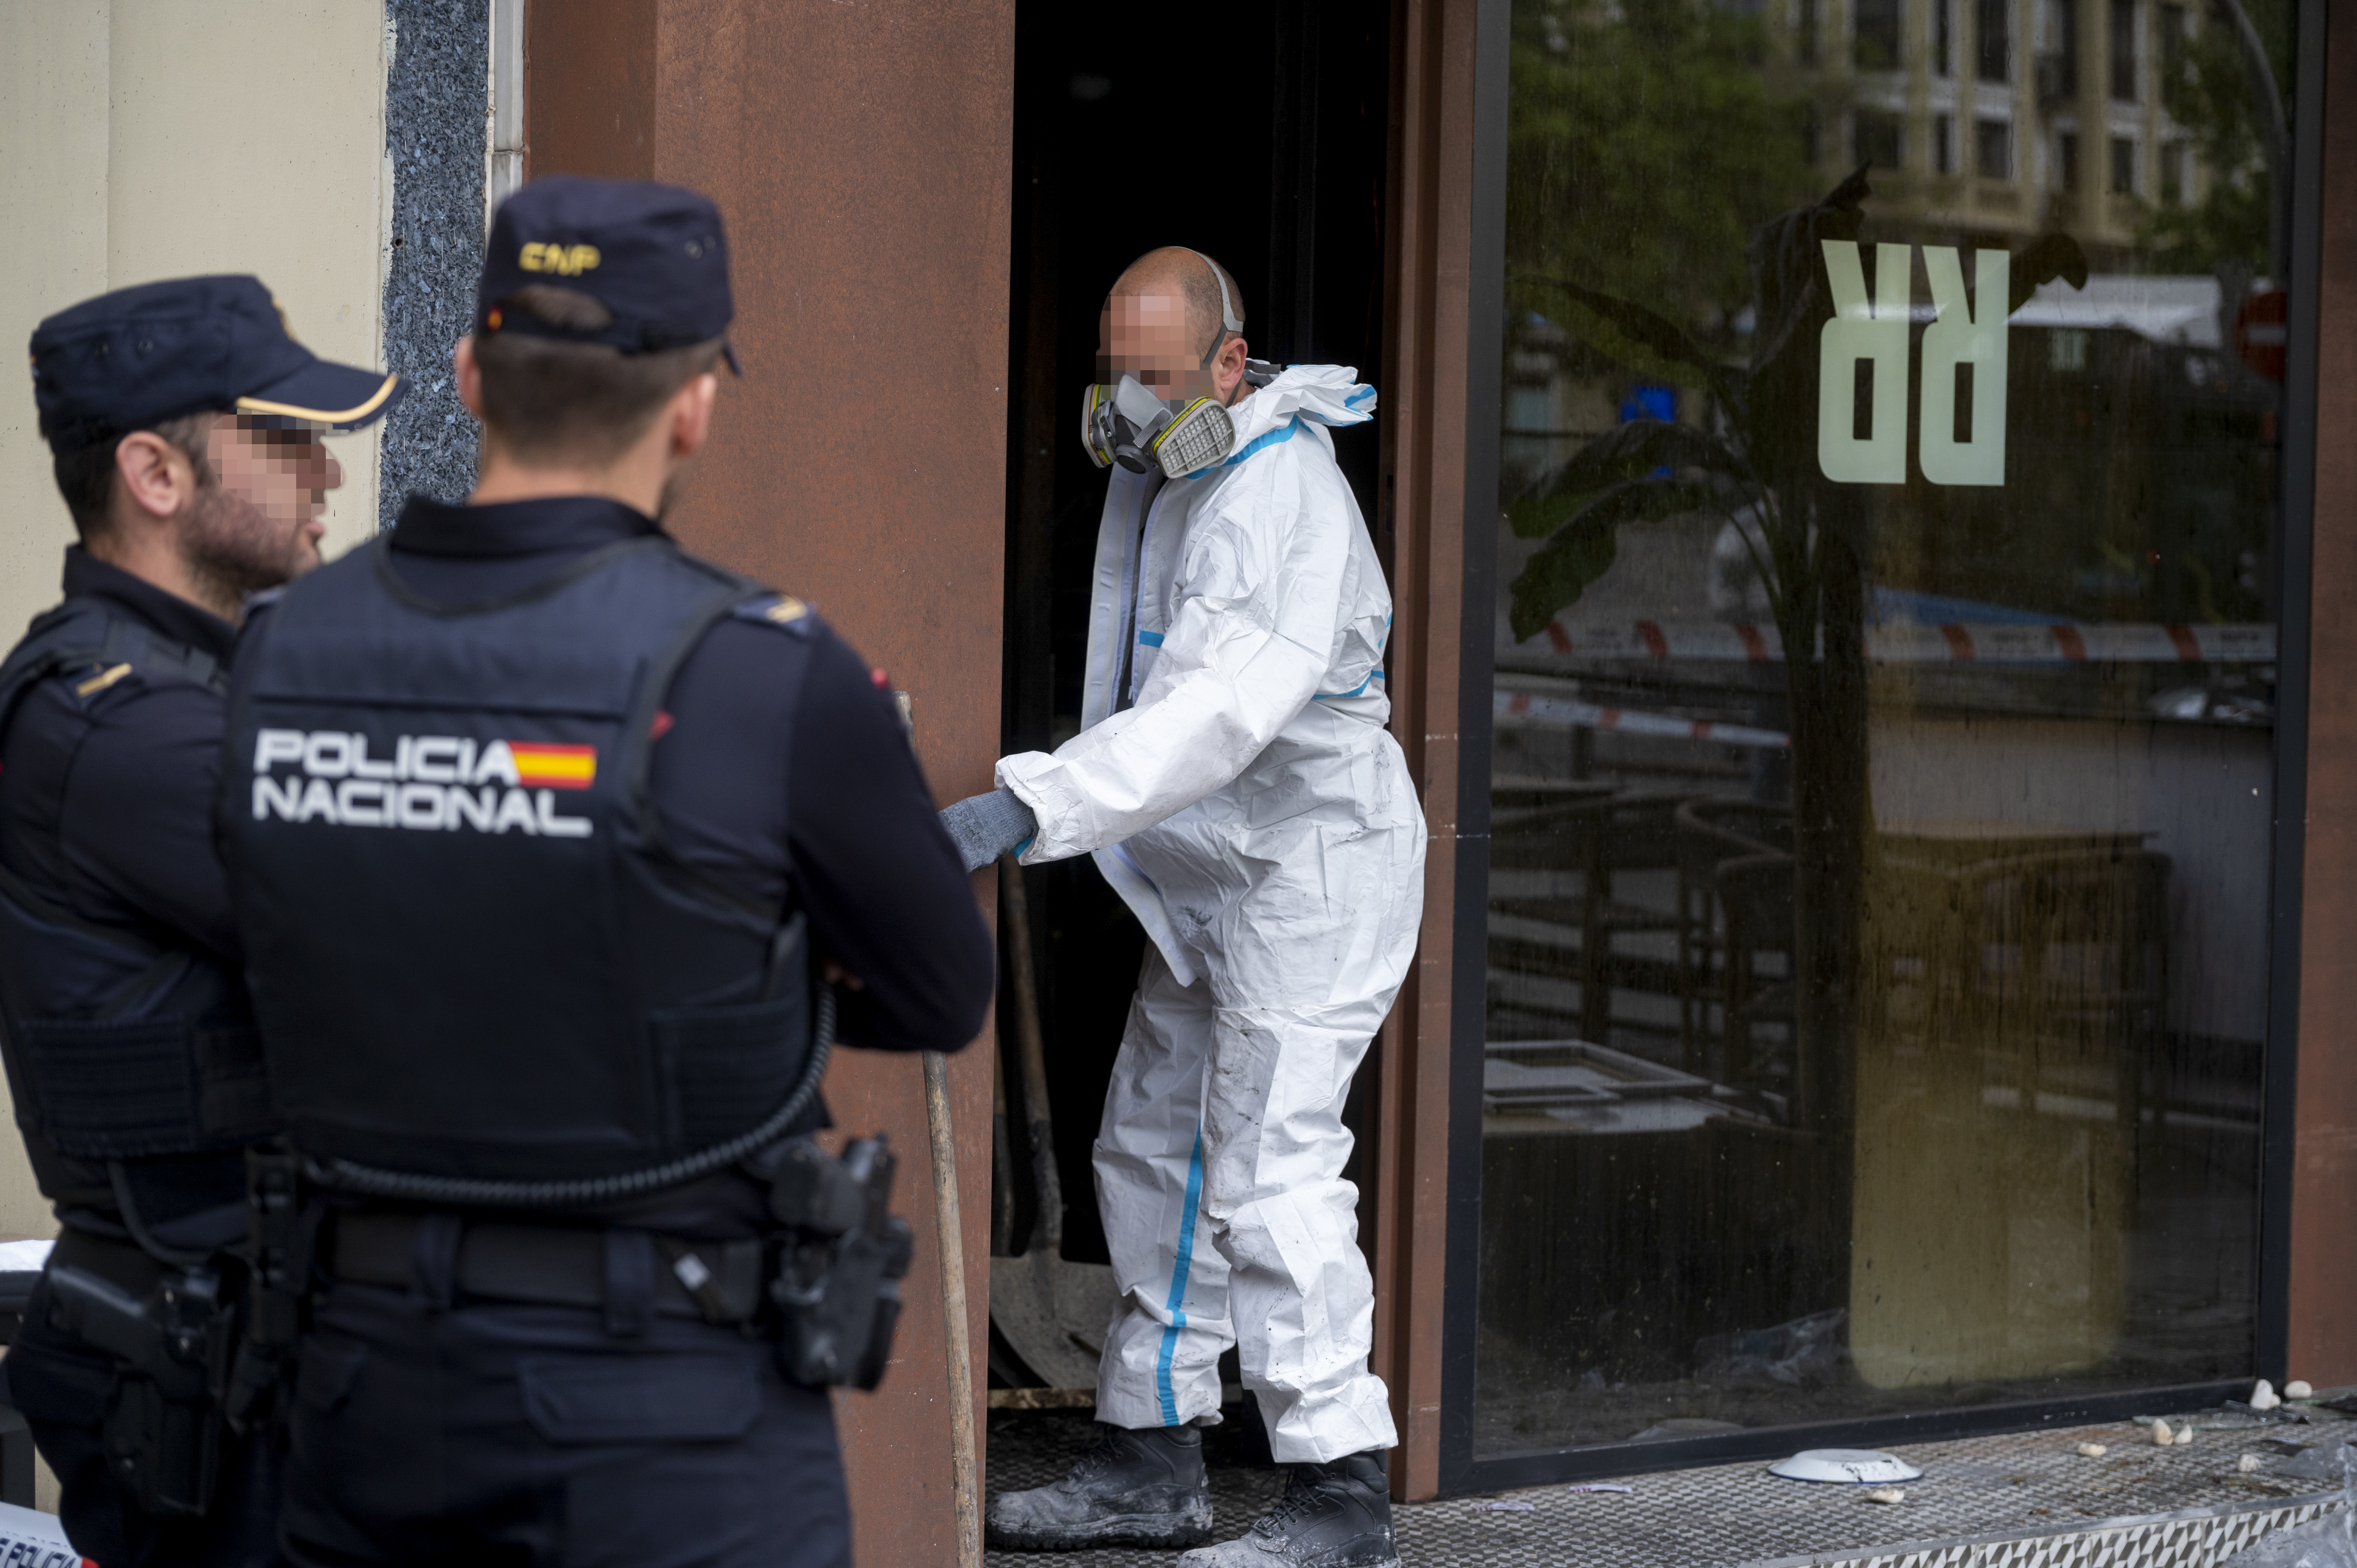 La cena termina en tragedia en Madrid: muere un anciano en un bar